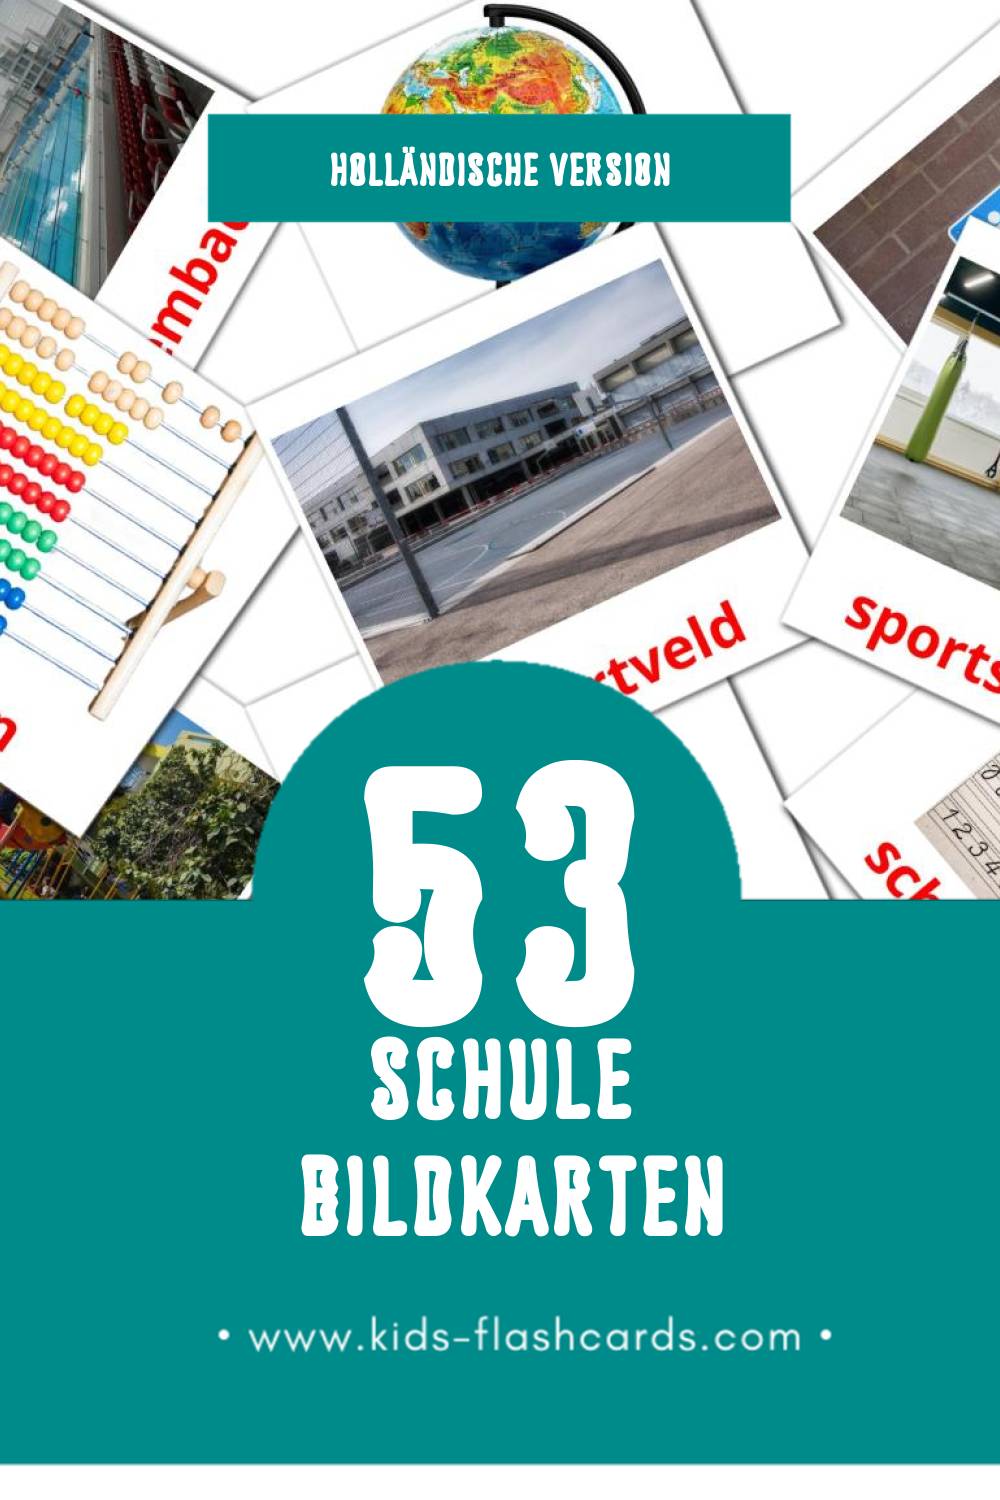 Visual School Flashcards für Kleinkinder (53 Karten in Holländisch)